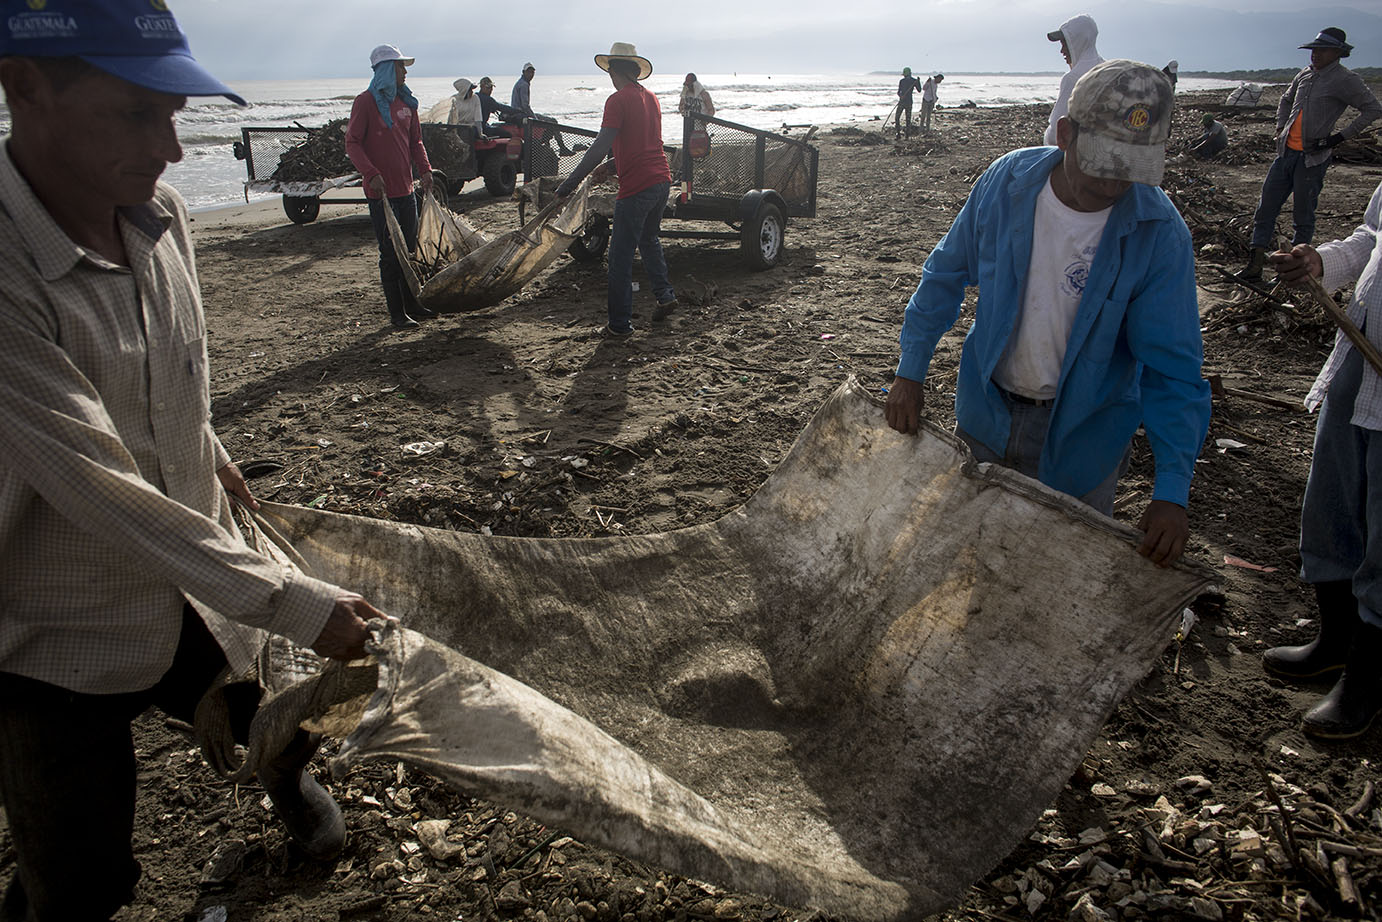 Empleados del MARN, en su mayoría originarios de la aldea El Quetzalito, limpian la playa donde desemboca el río Motagua. Noviembre 2019. Simone Dalmasso